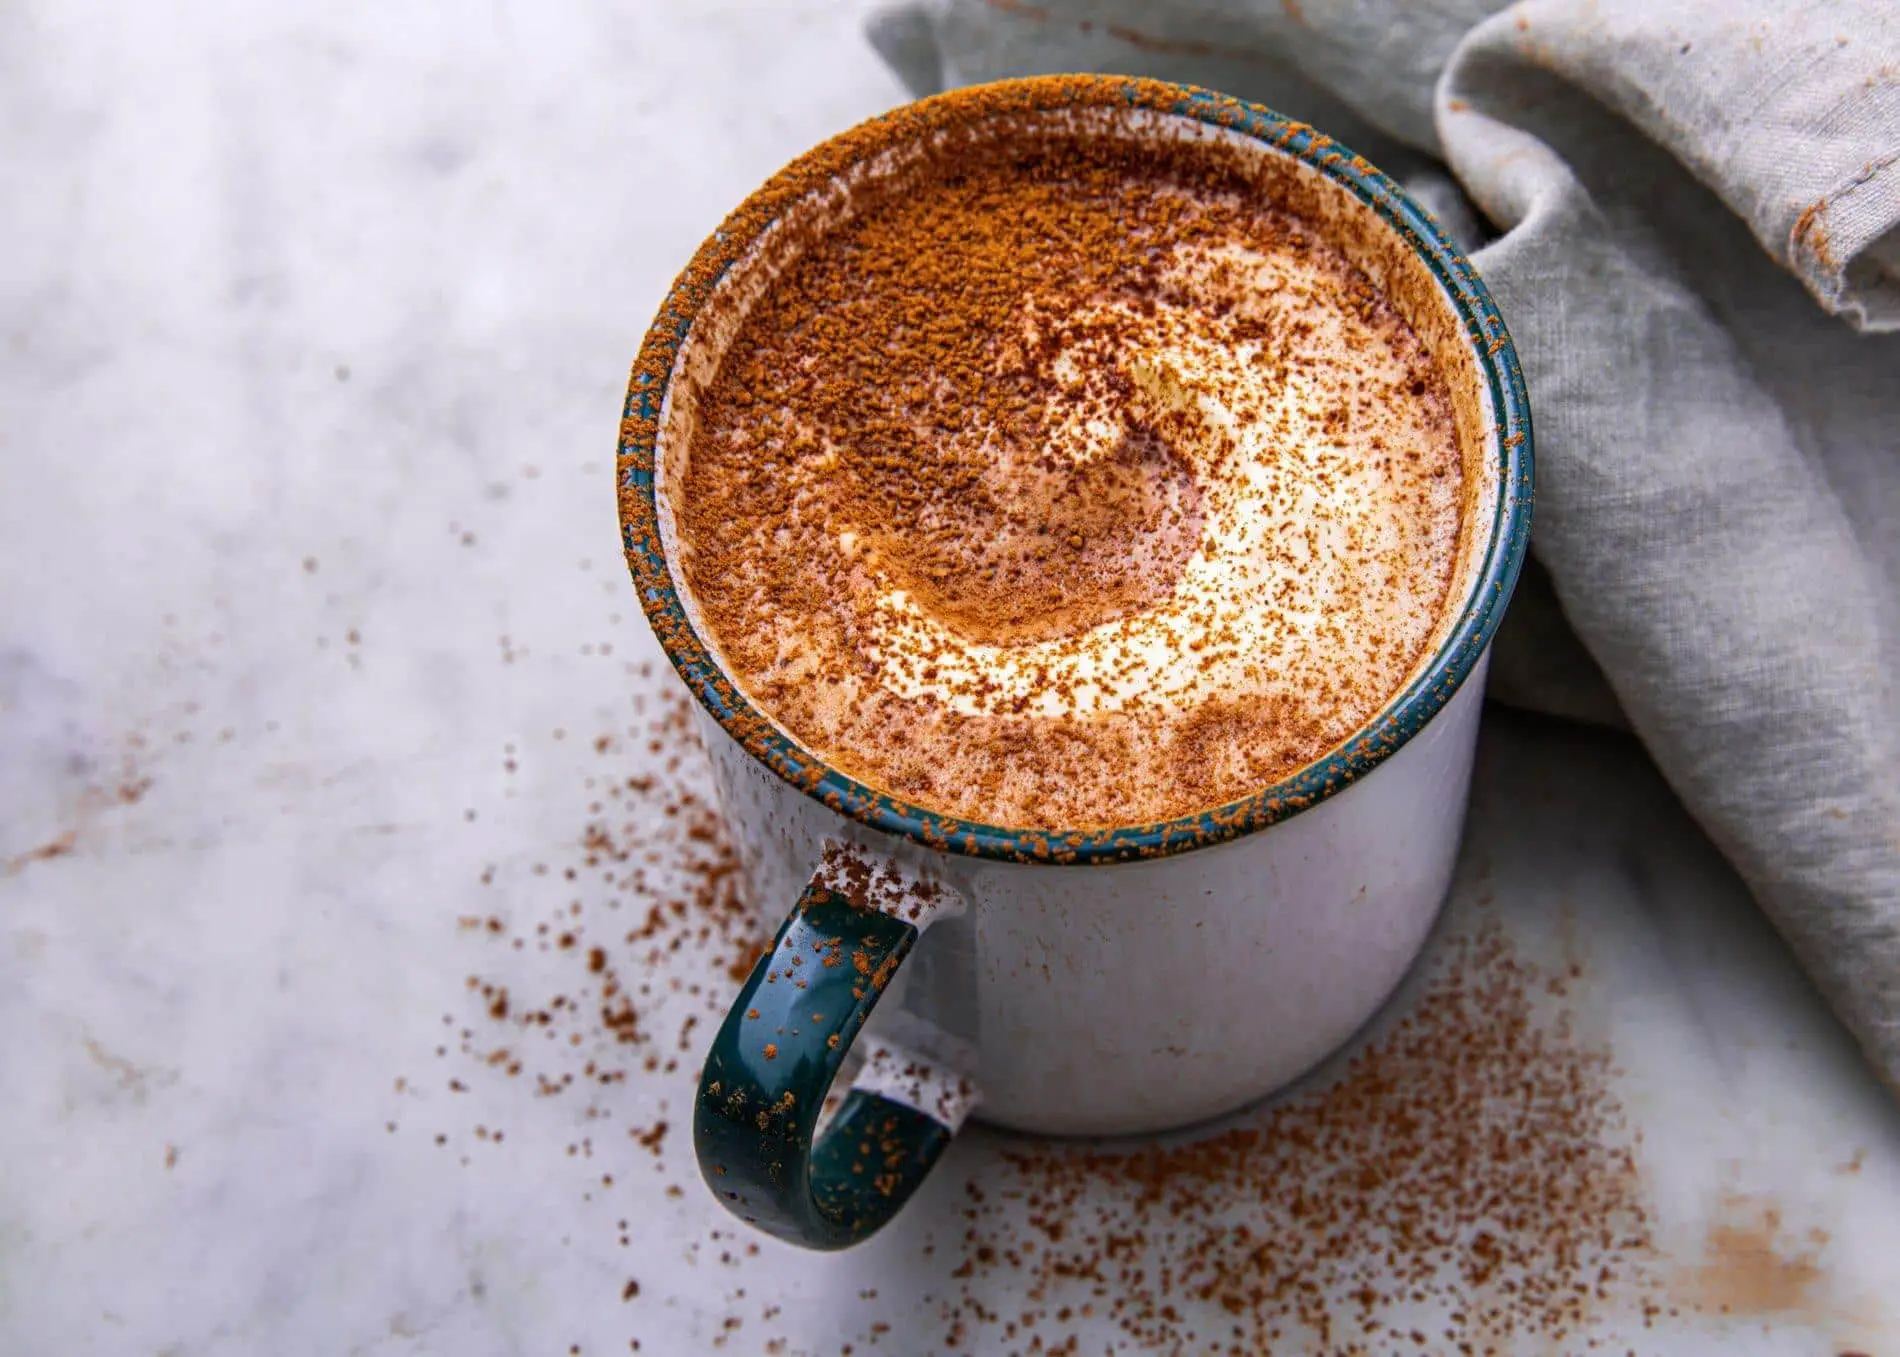 Best Keto Hot Chocolate Recipe - How To Make Keto Hot Chocolate